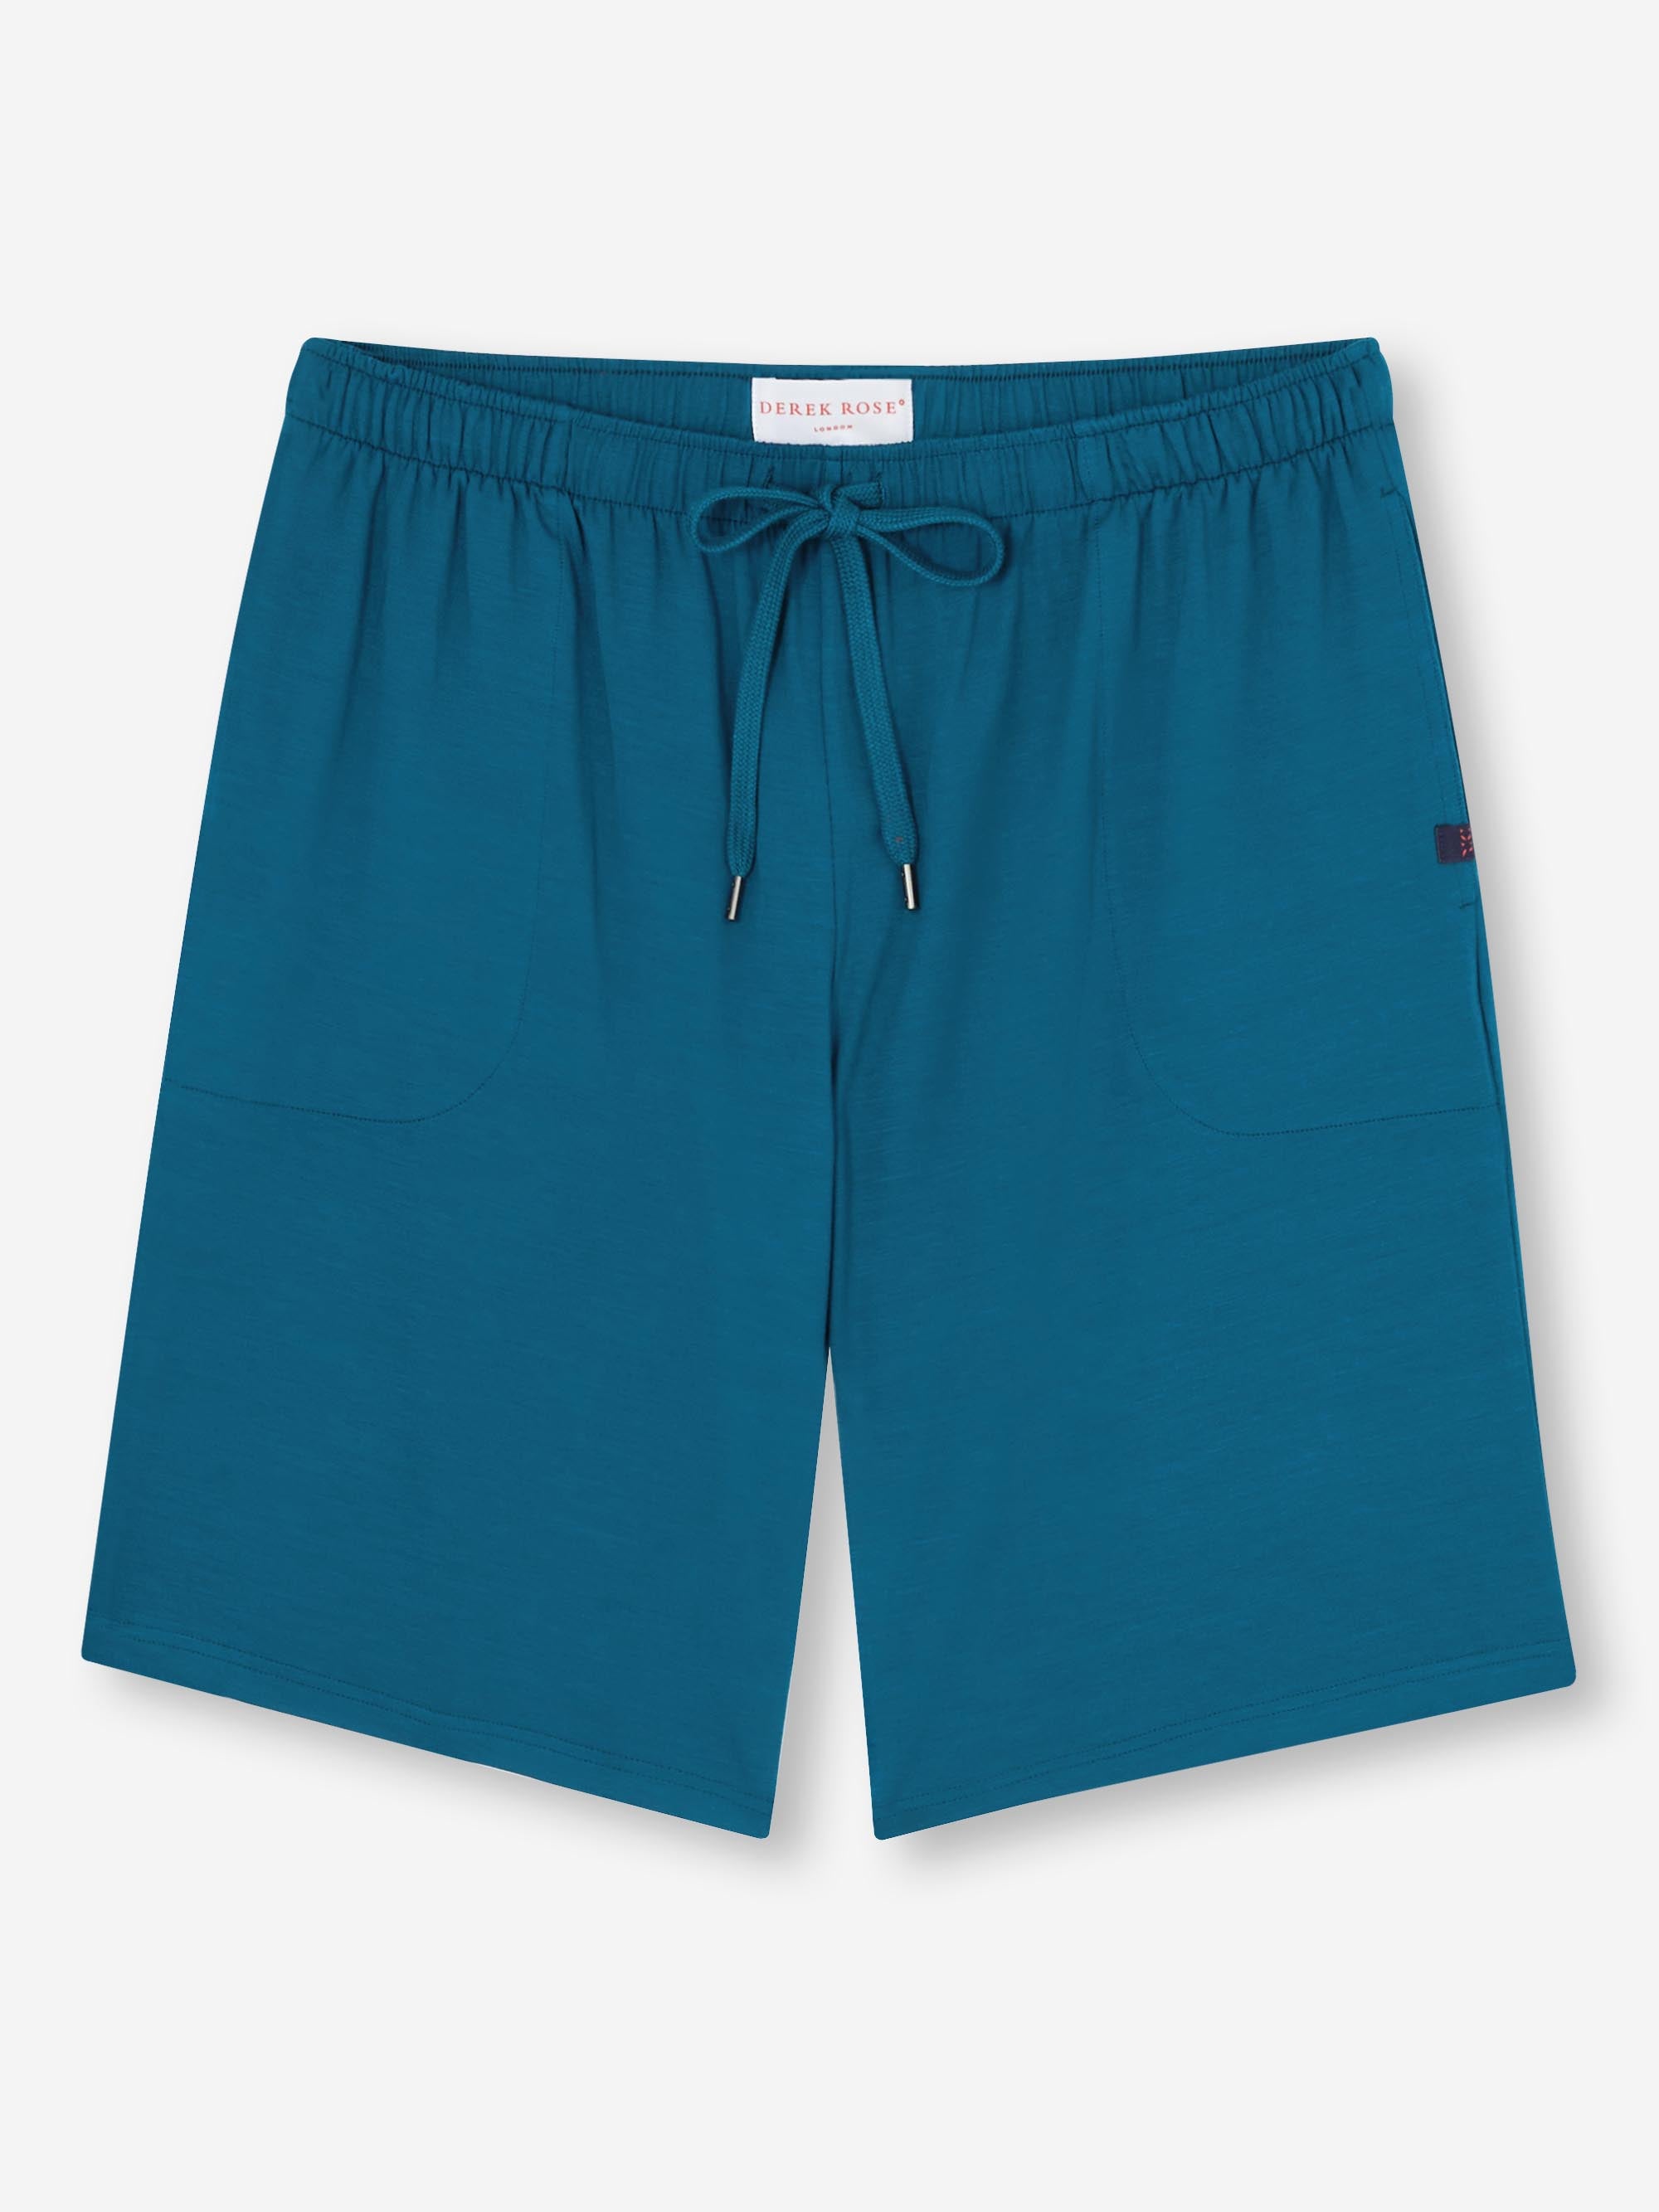 Men's Lounge Shorts Basel Micro Modal Stretch Poseidon Blue